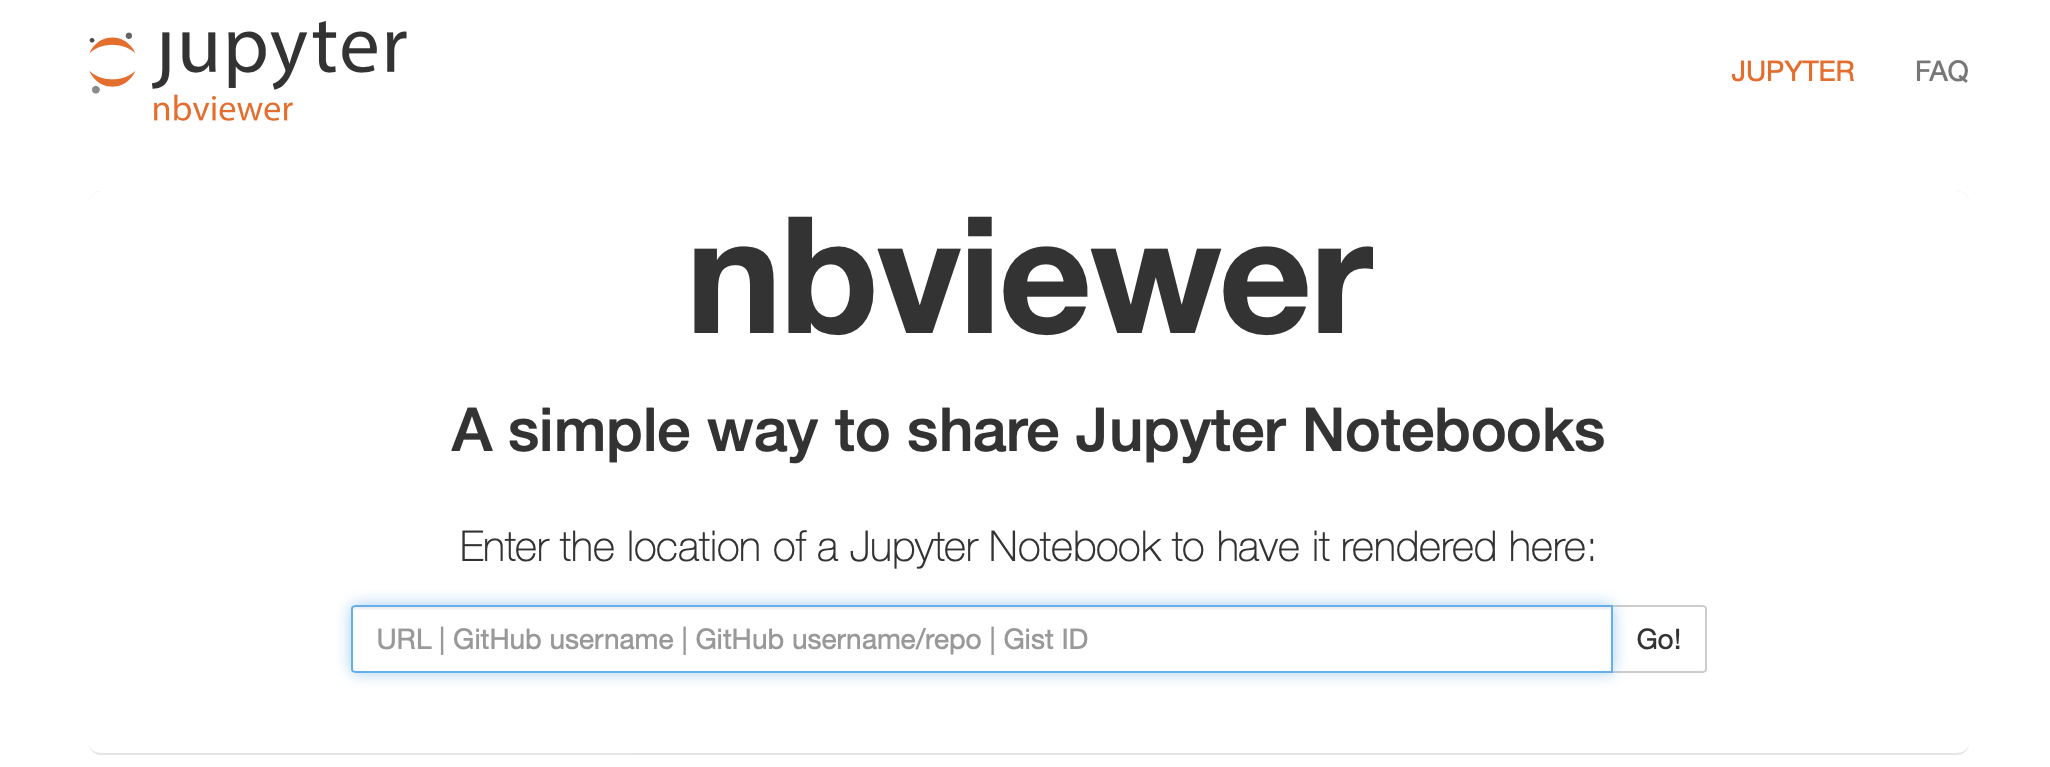 NBviewer